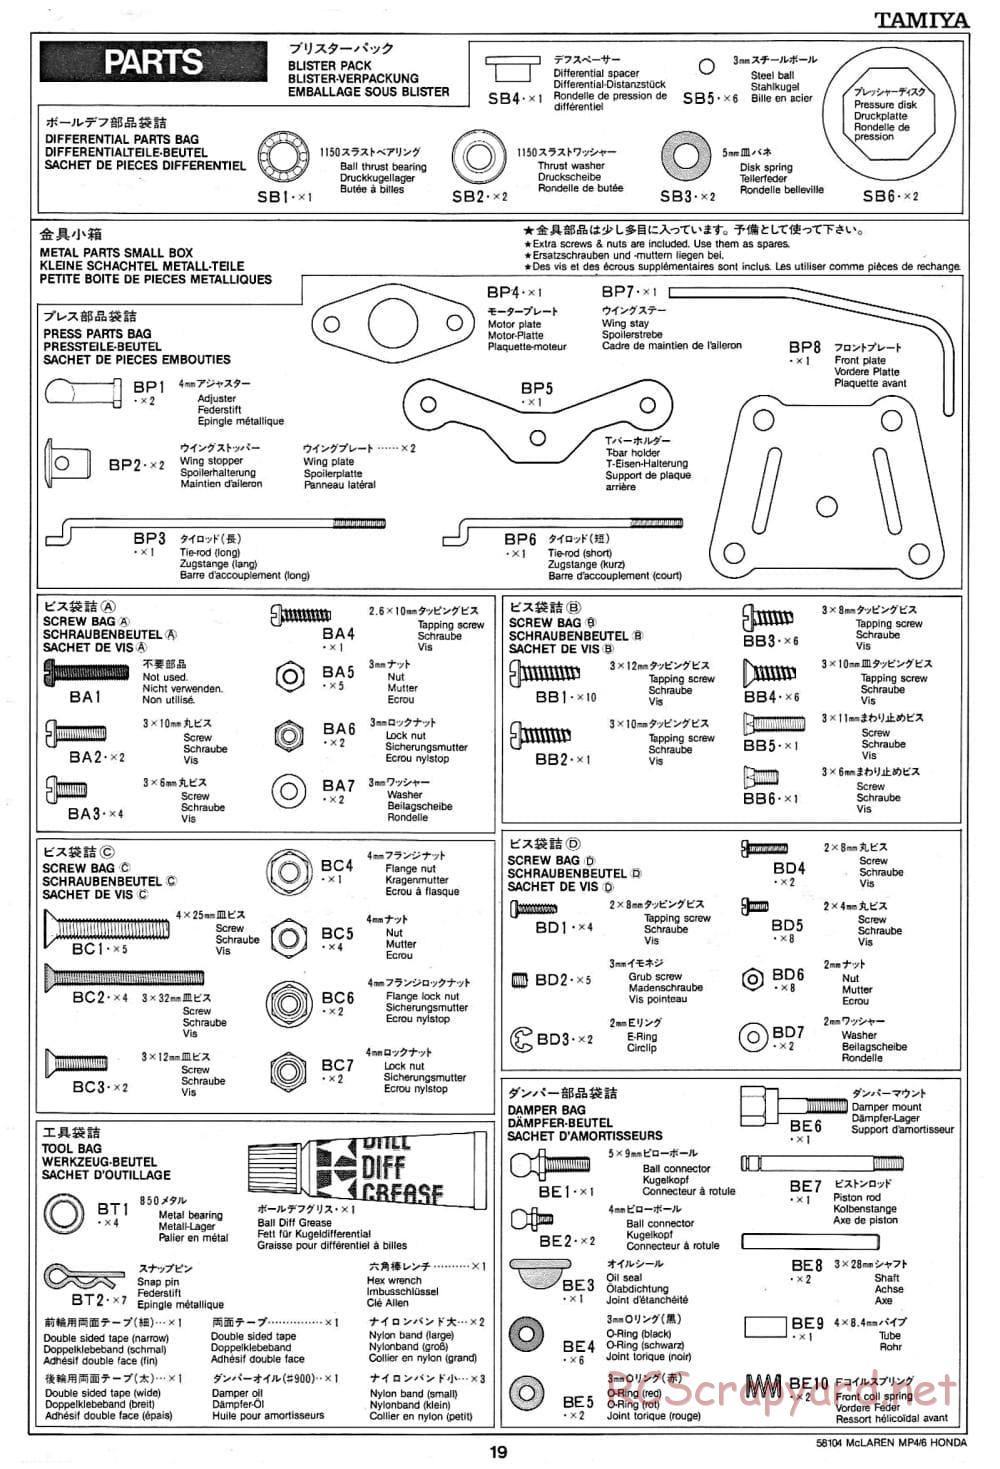 Tamiya - McLaren MP4/6 Honda - F102 Chassis - Manual - Page 19